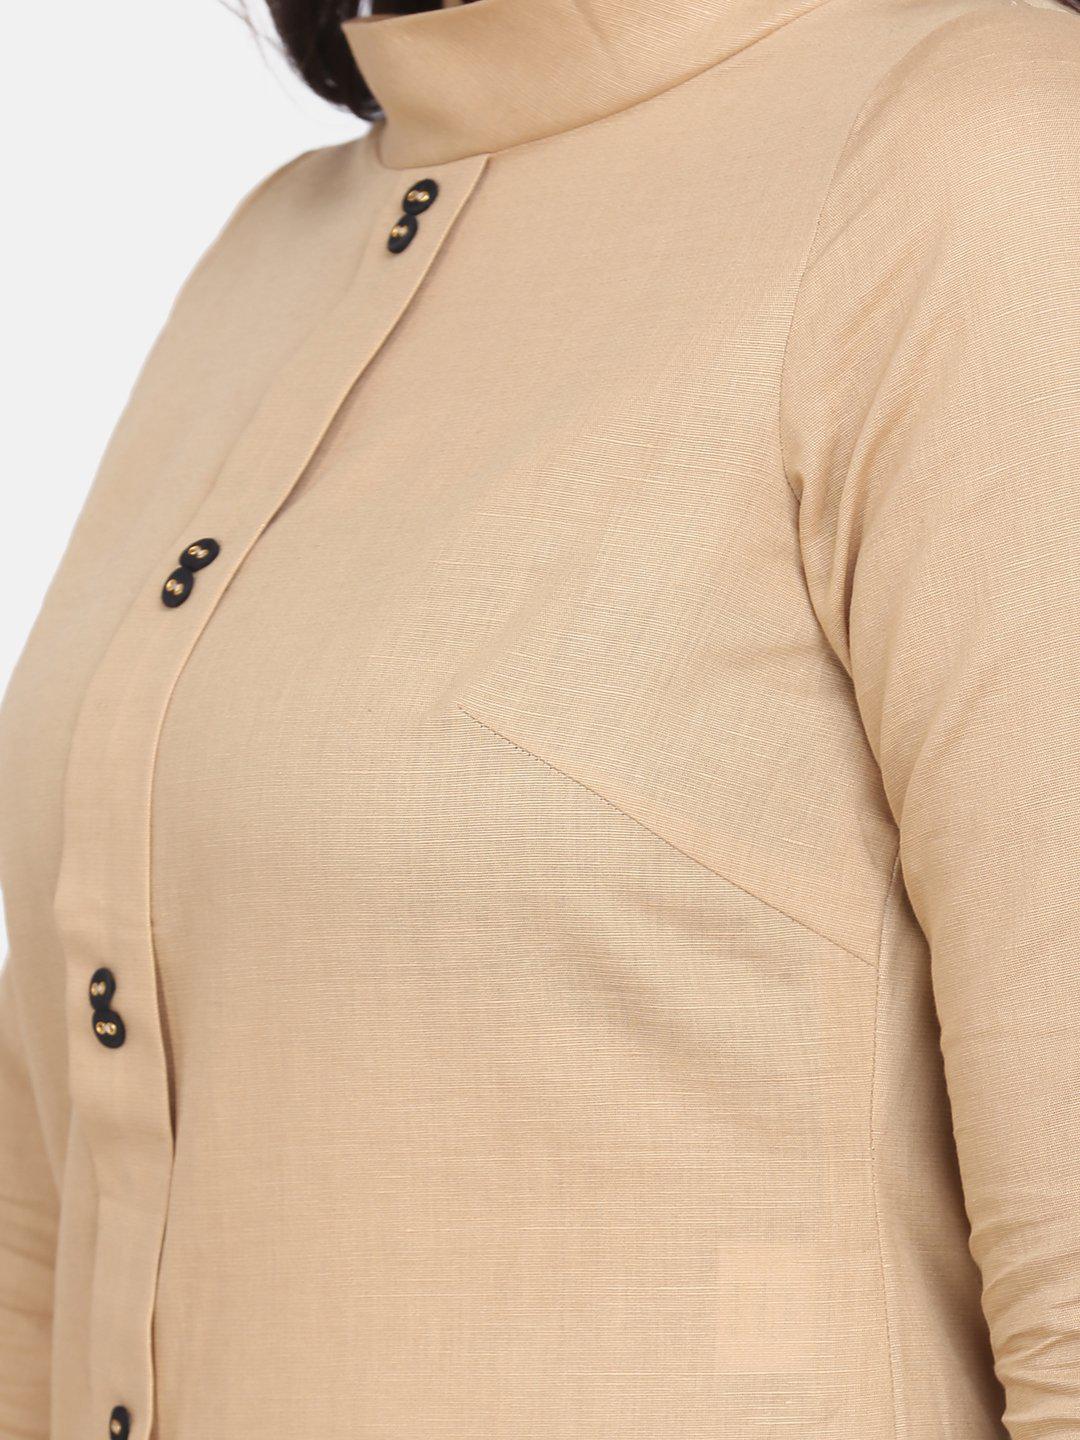 Round Collar Cotton Top For Women - Beige